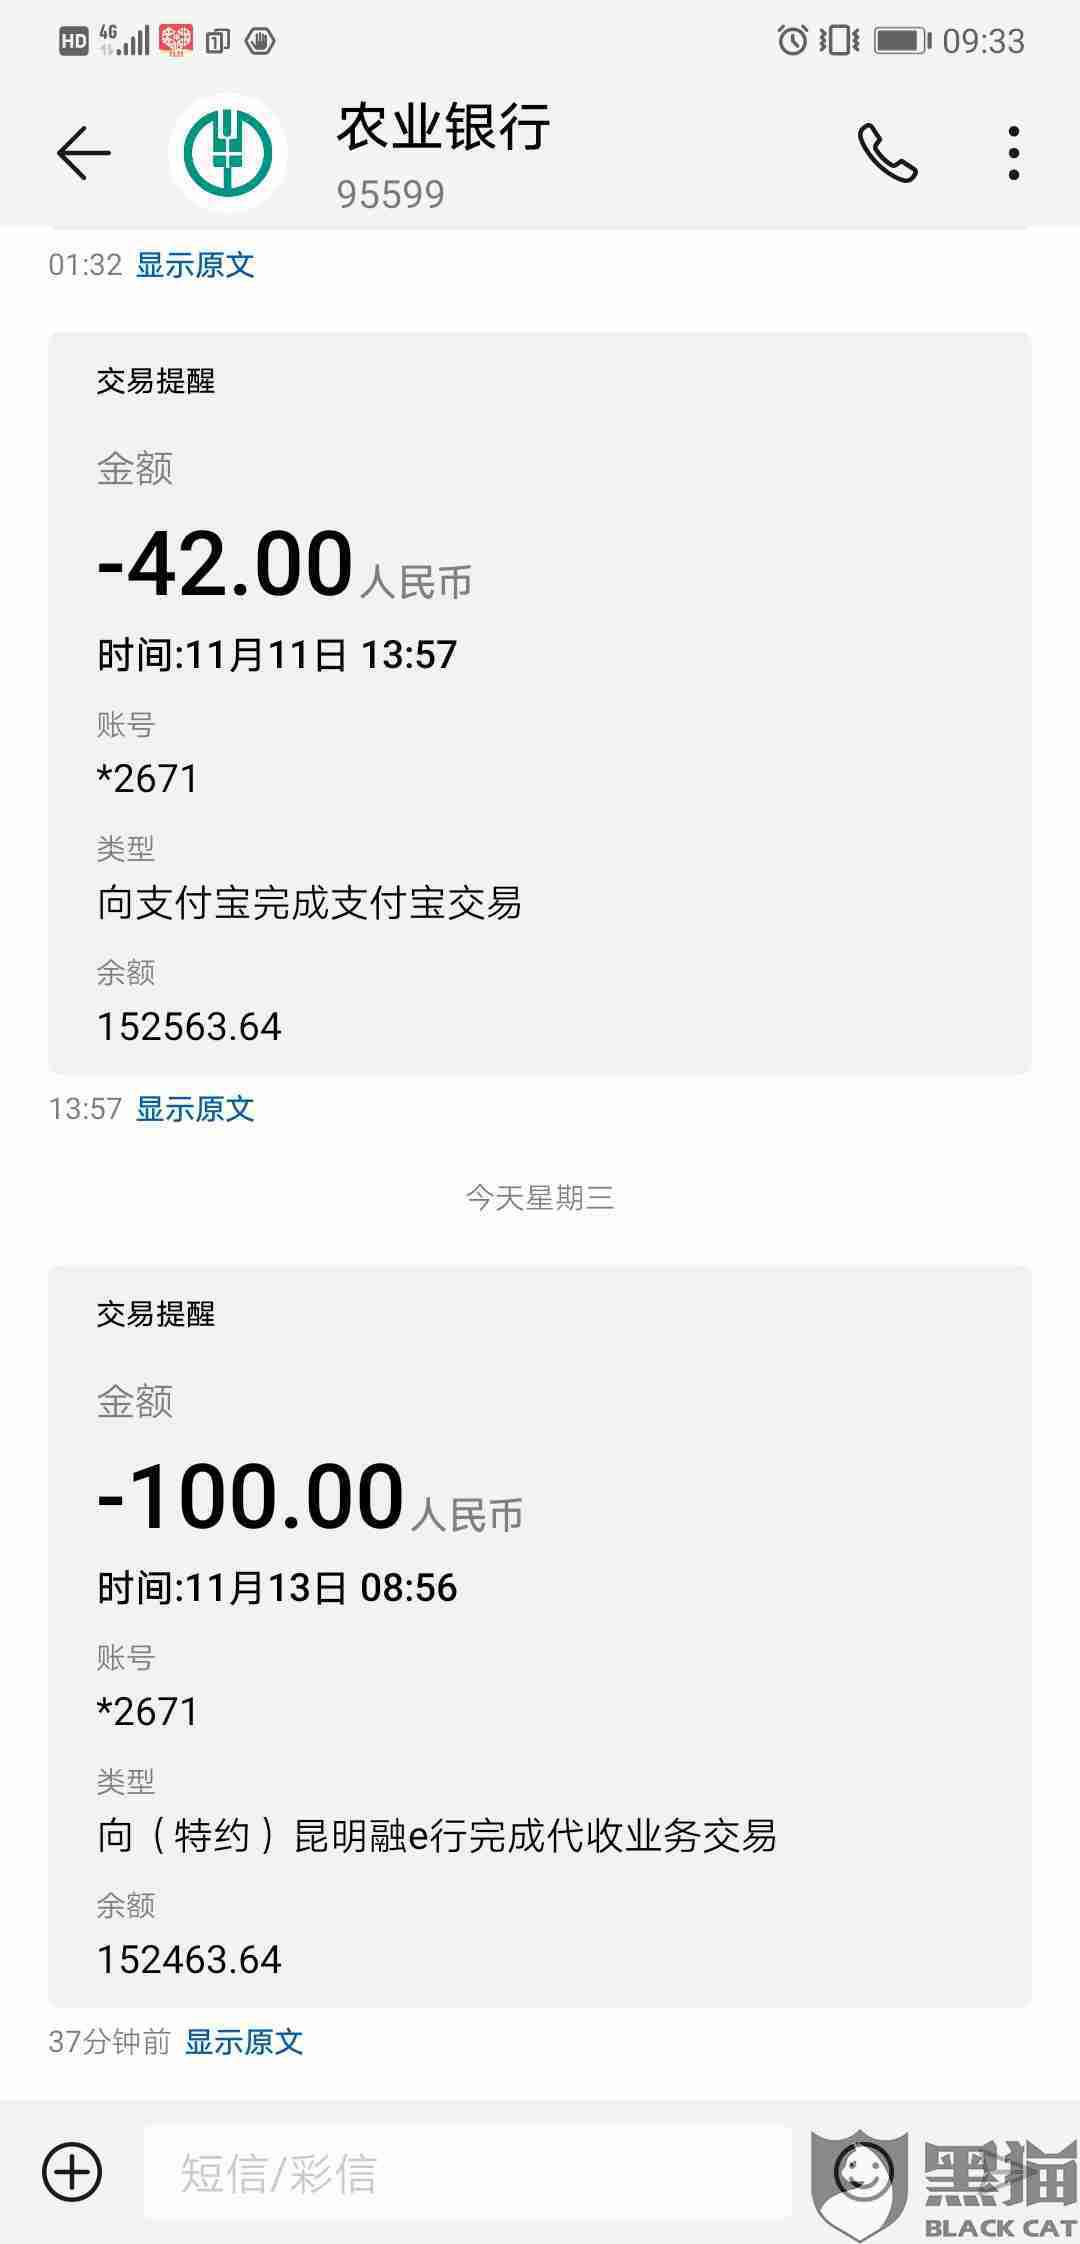 黑猫投诉中国农业银行您尾号2671账户11月13日0856向特约昆明融e行